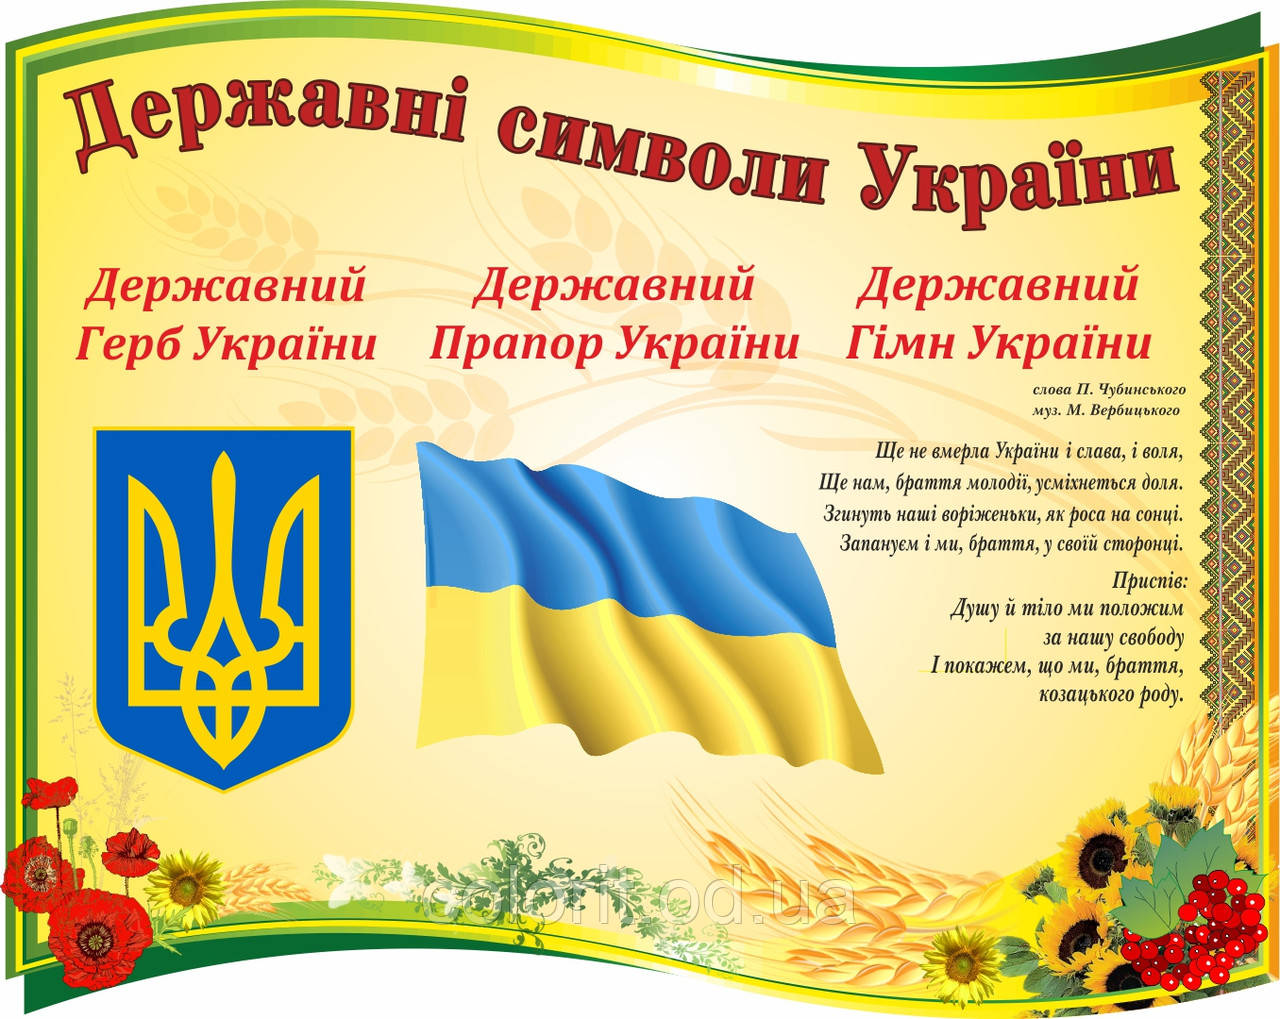 Національні символи України